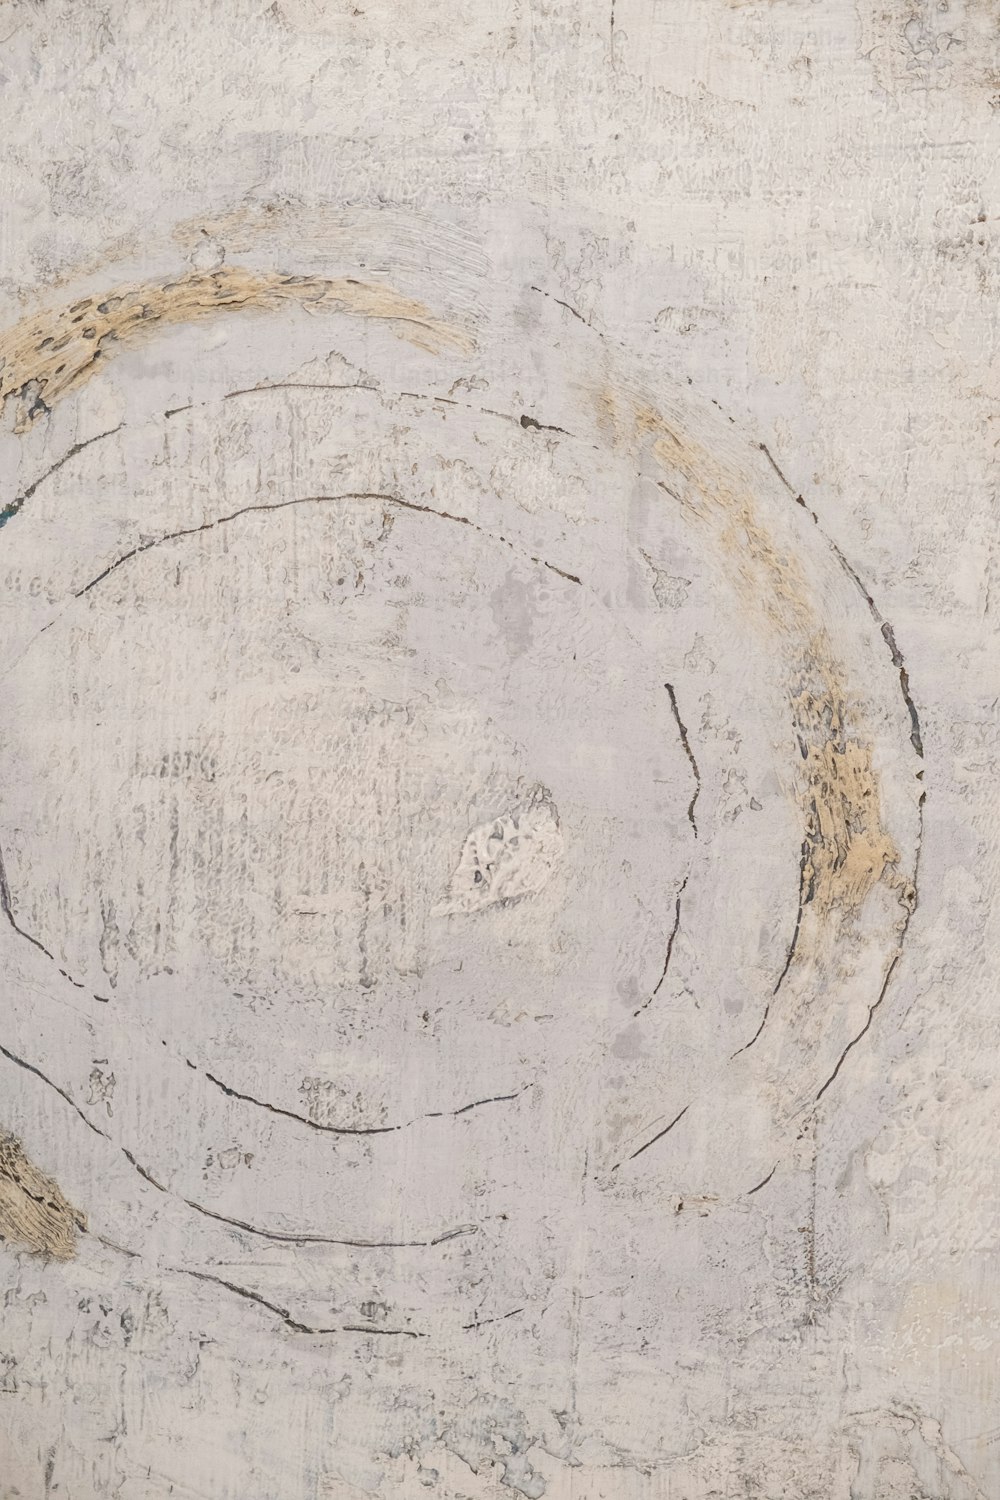 壁に描かれた円の抽象画